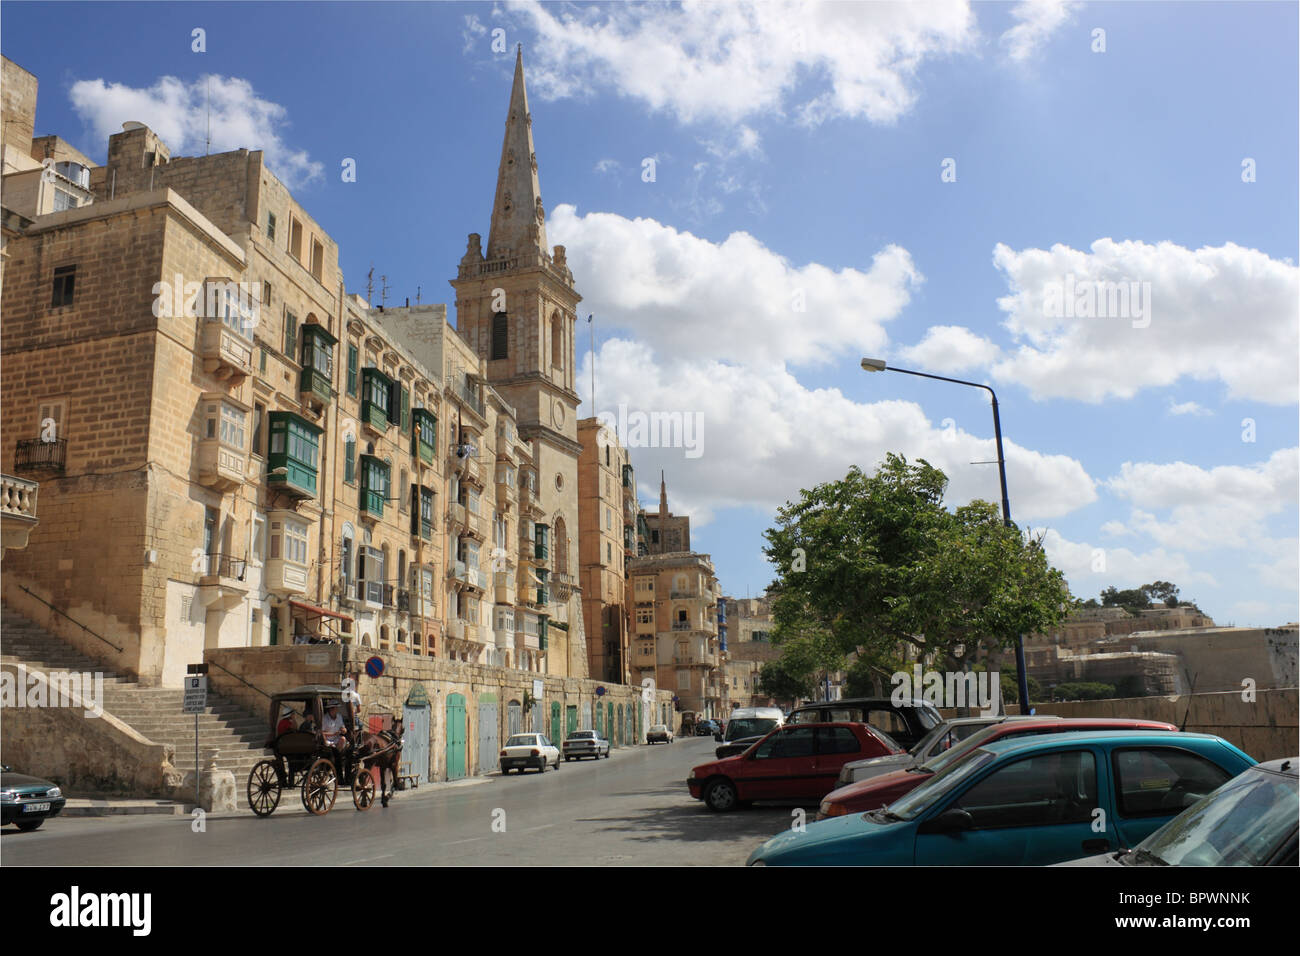 San Paolo Cattedrale anglicana, visto da Triq il Porto Marsamxett, Valletta, Malta, Mediterraneo, Europa Foto Stock